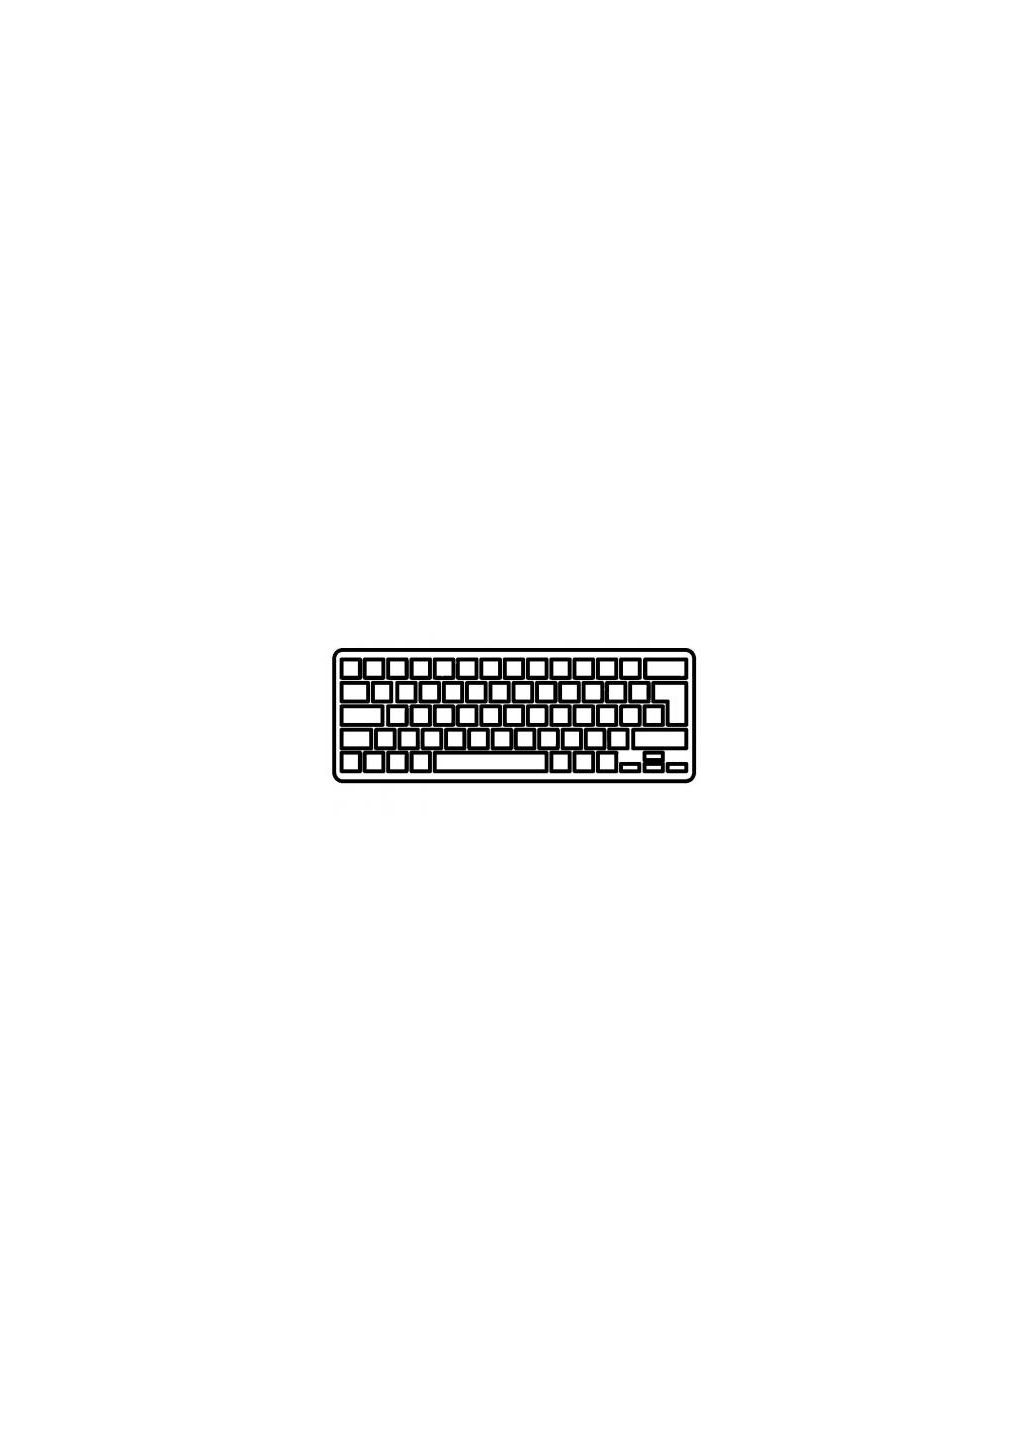 Клавиатура ноутбука Inspiron 147000 Series серебро без рамки подсветкой RU (A43835) Dell inspiron 14-7000 series серебро без рамки подсветк (276707131)